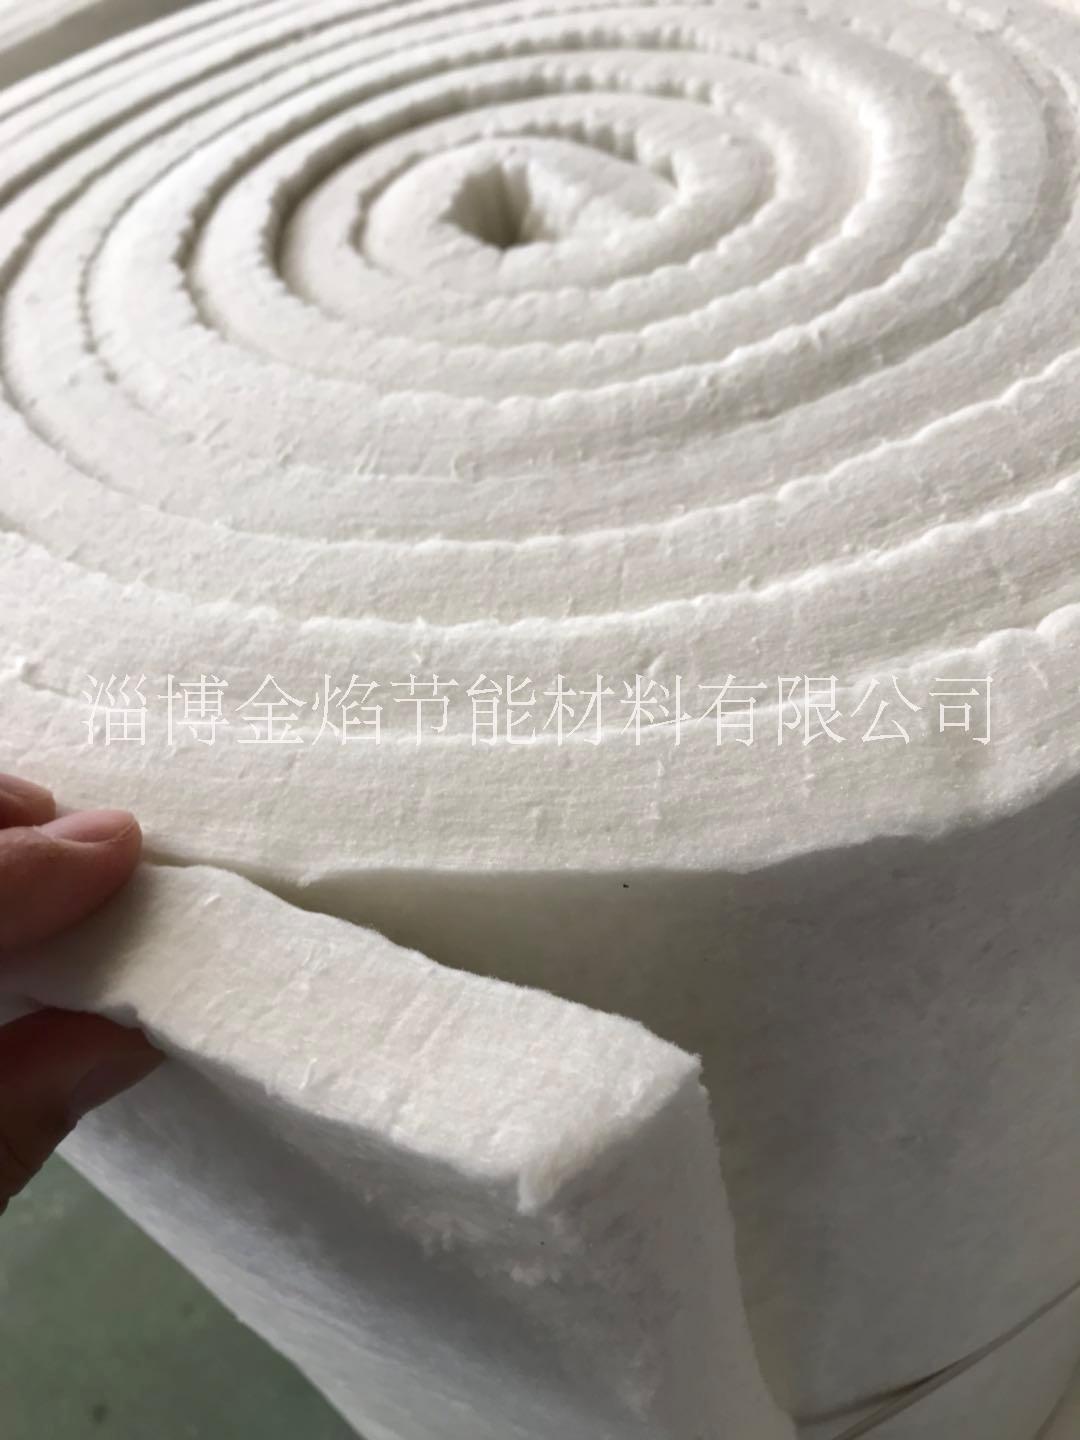 淄博市碳素焙烧炉用的陶瓷纤维保温隔热毯厂家碳素焙烧炉用的陶瓷纤维保温隔热毯